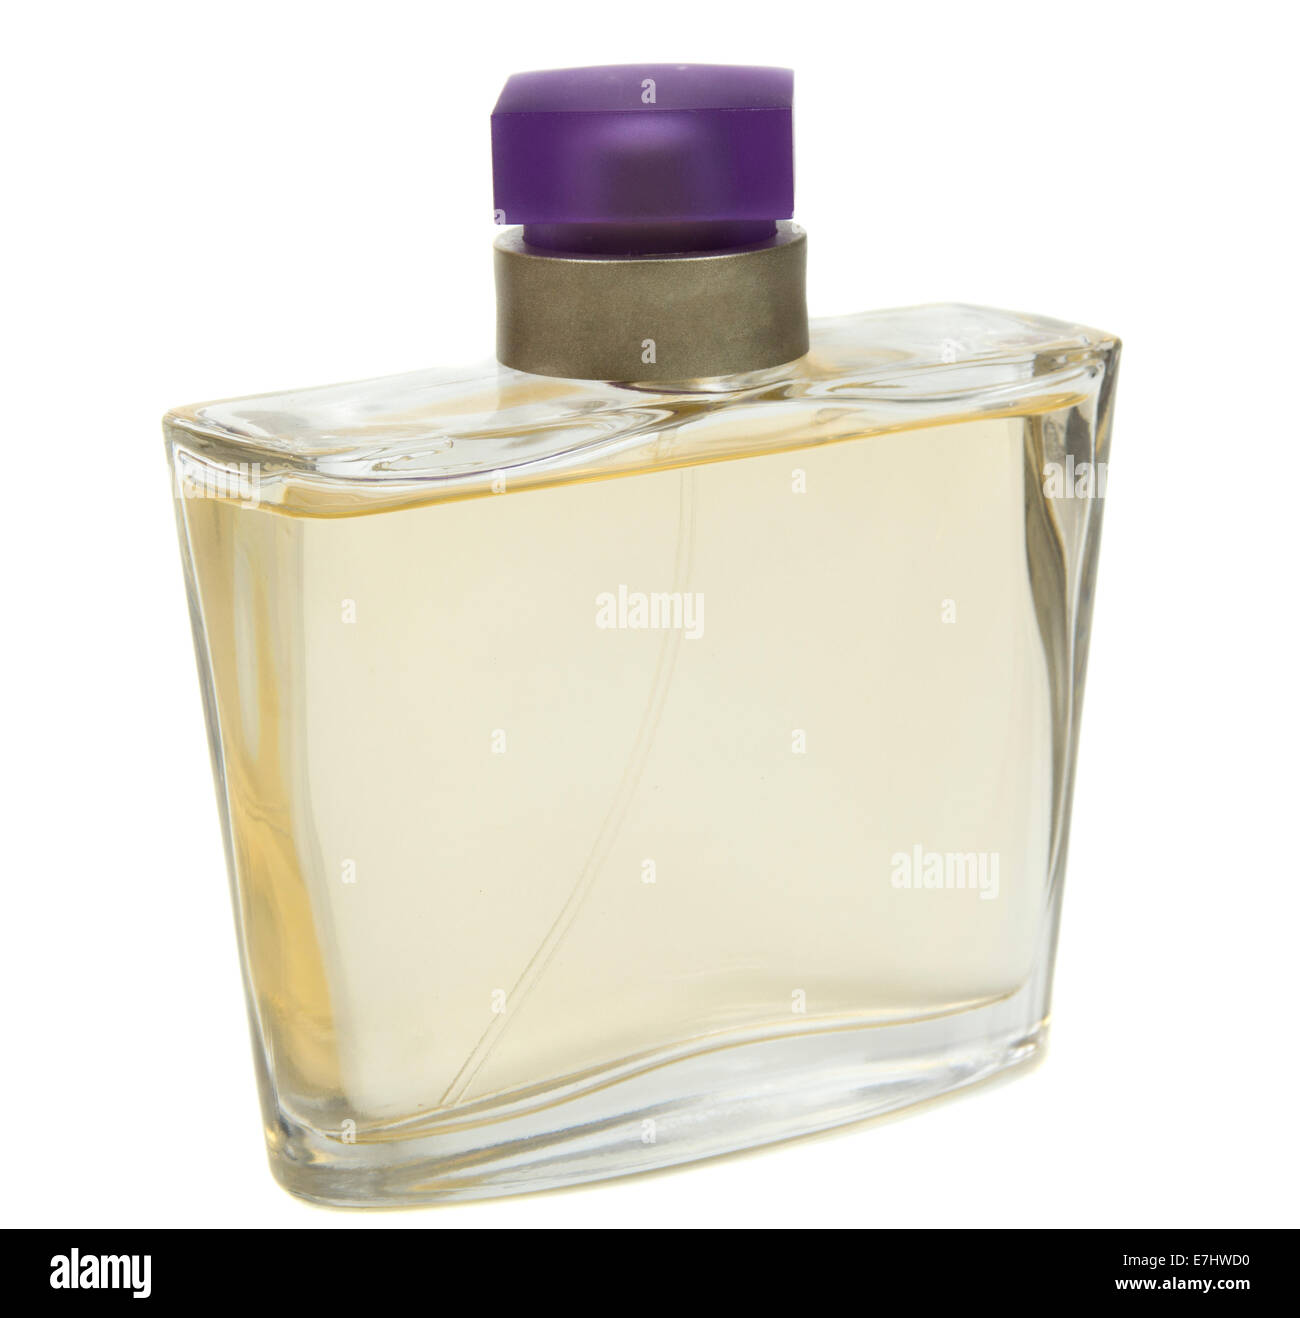 Flacon de parfum isolé sur fond blanc Banque D'Images